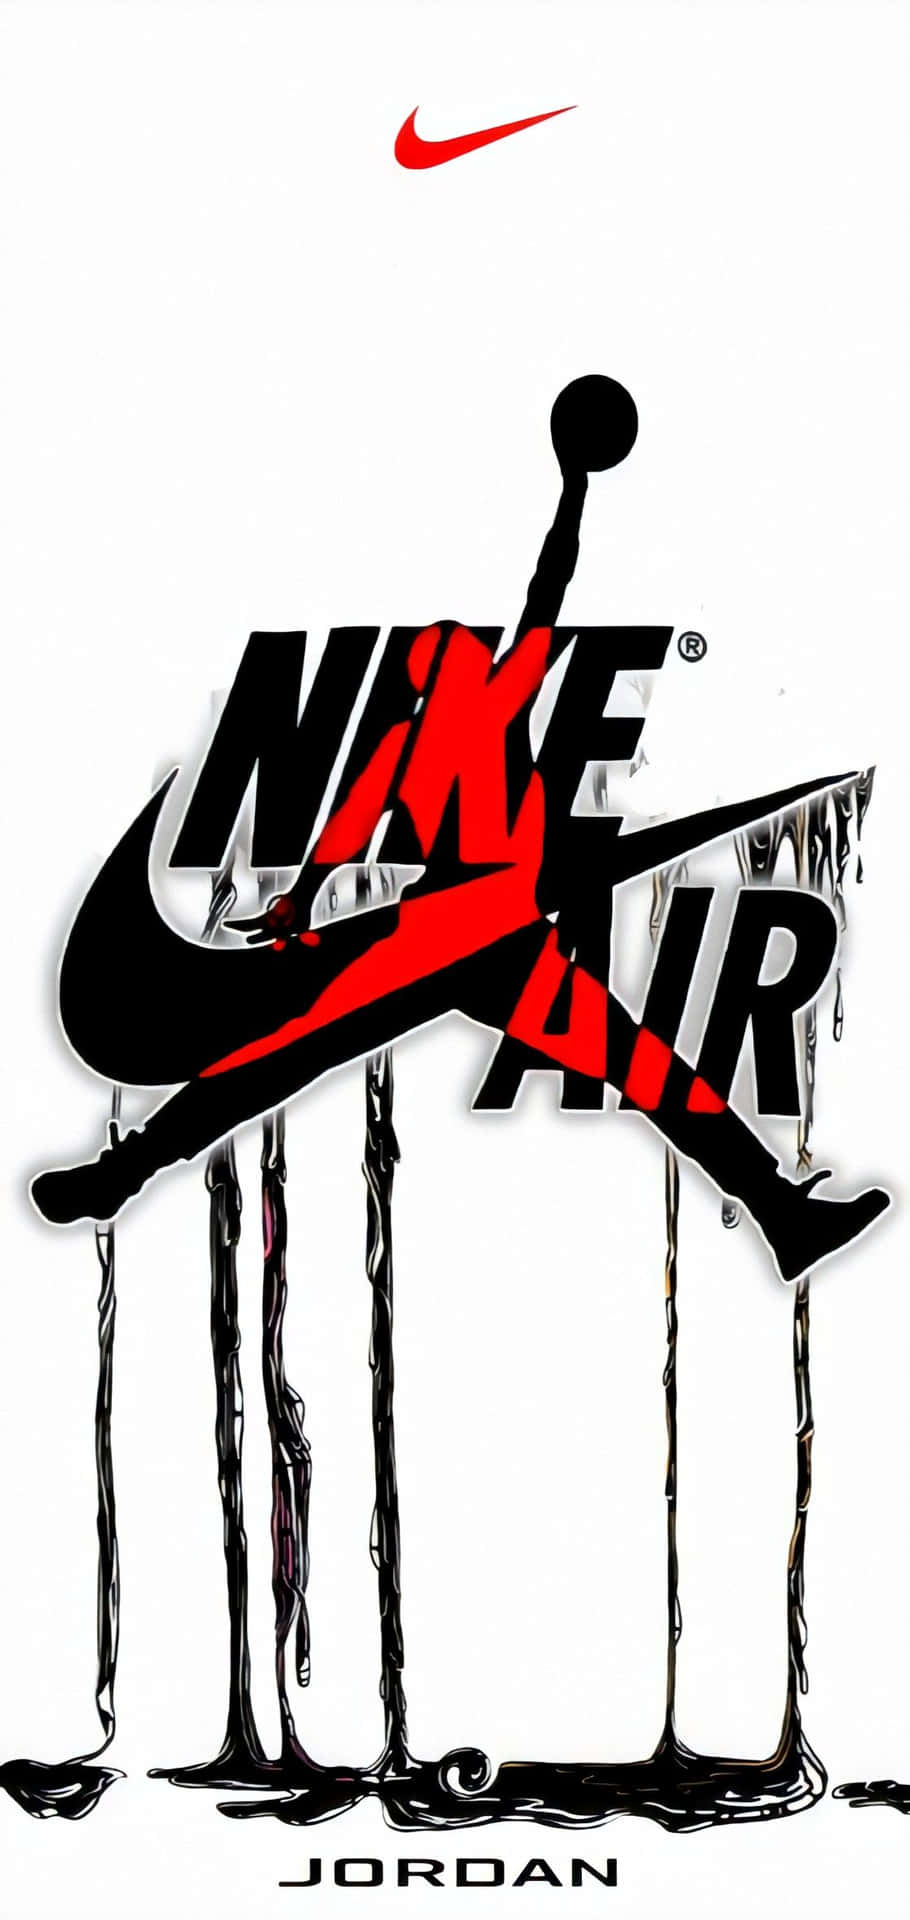 Download Nike Jordan Air Logo Paint Wallpaper | Wallpapers.com